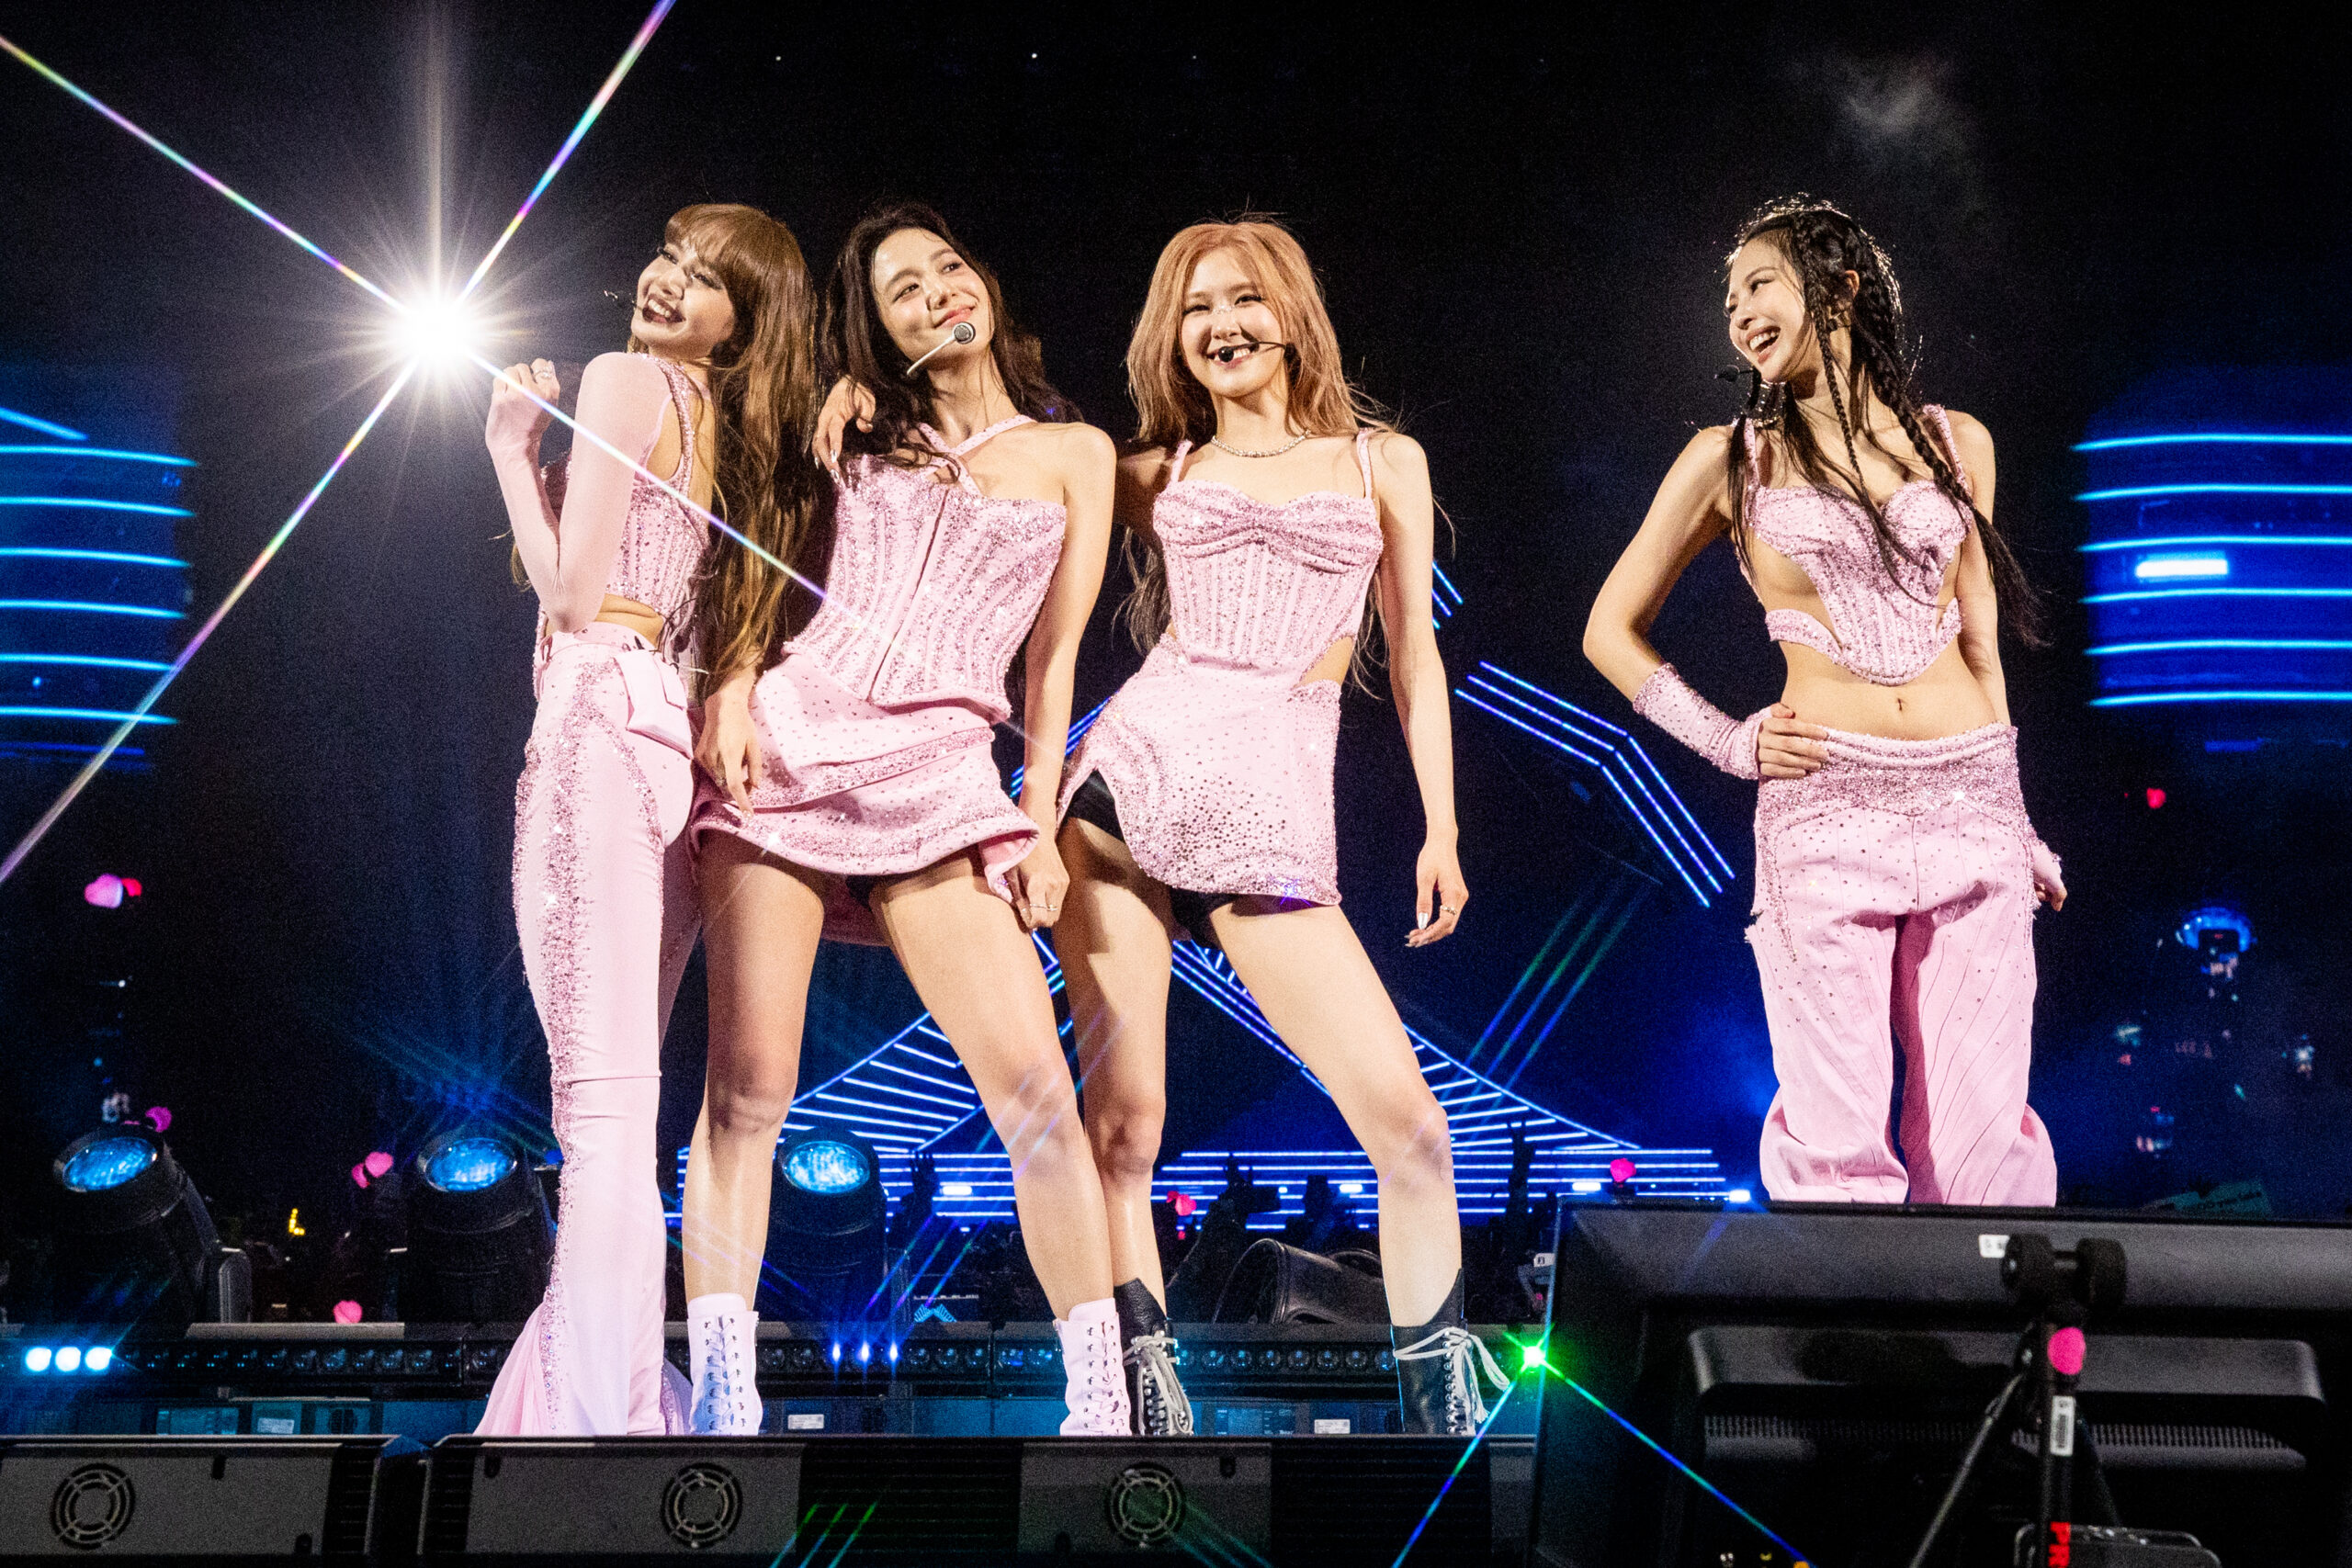 Blackpink (von links nach rechts): Lisa, Jisoo, Rosé, Jennie